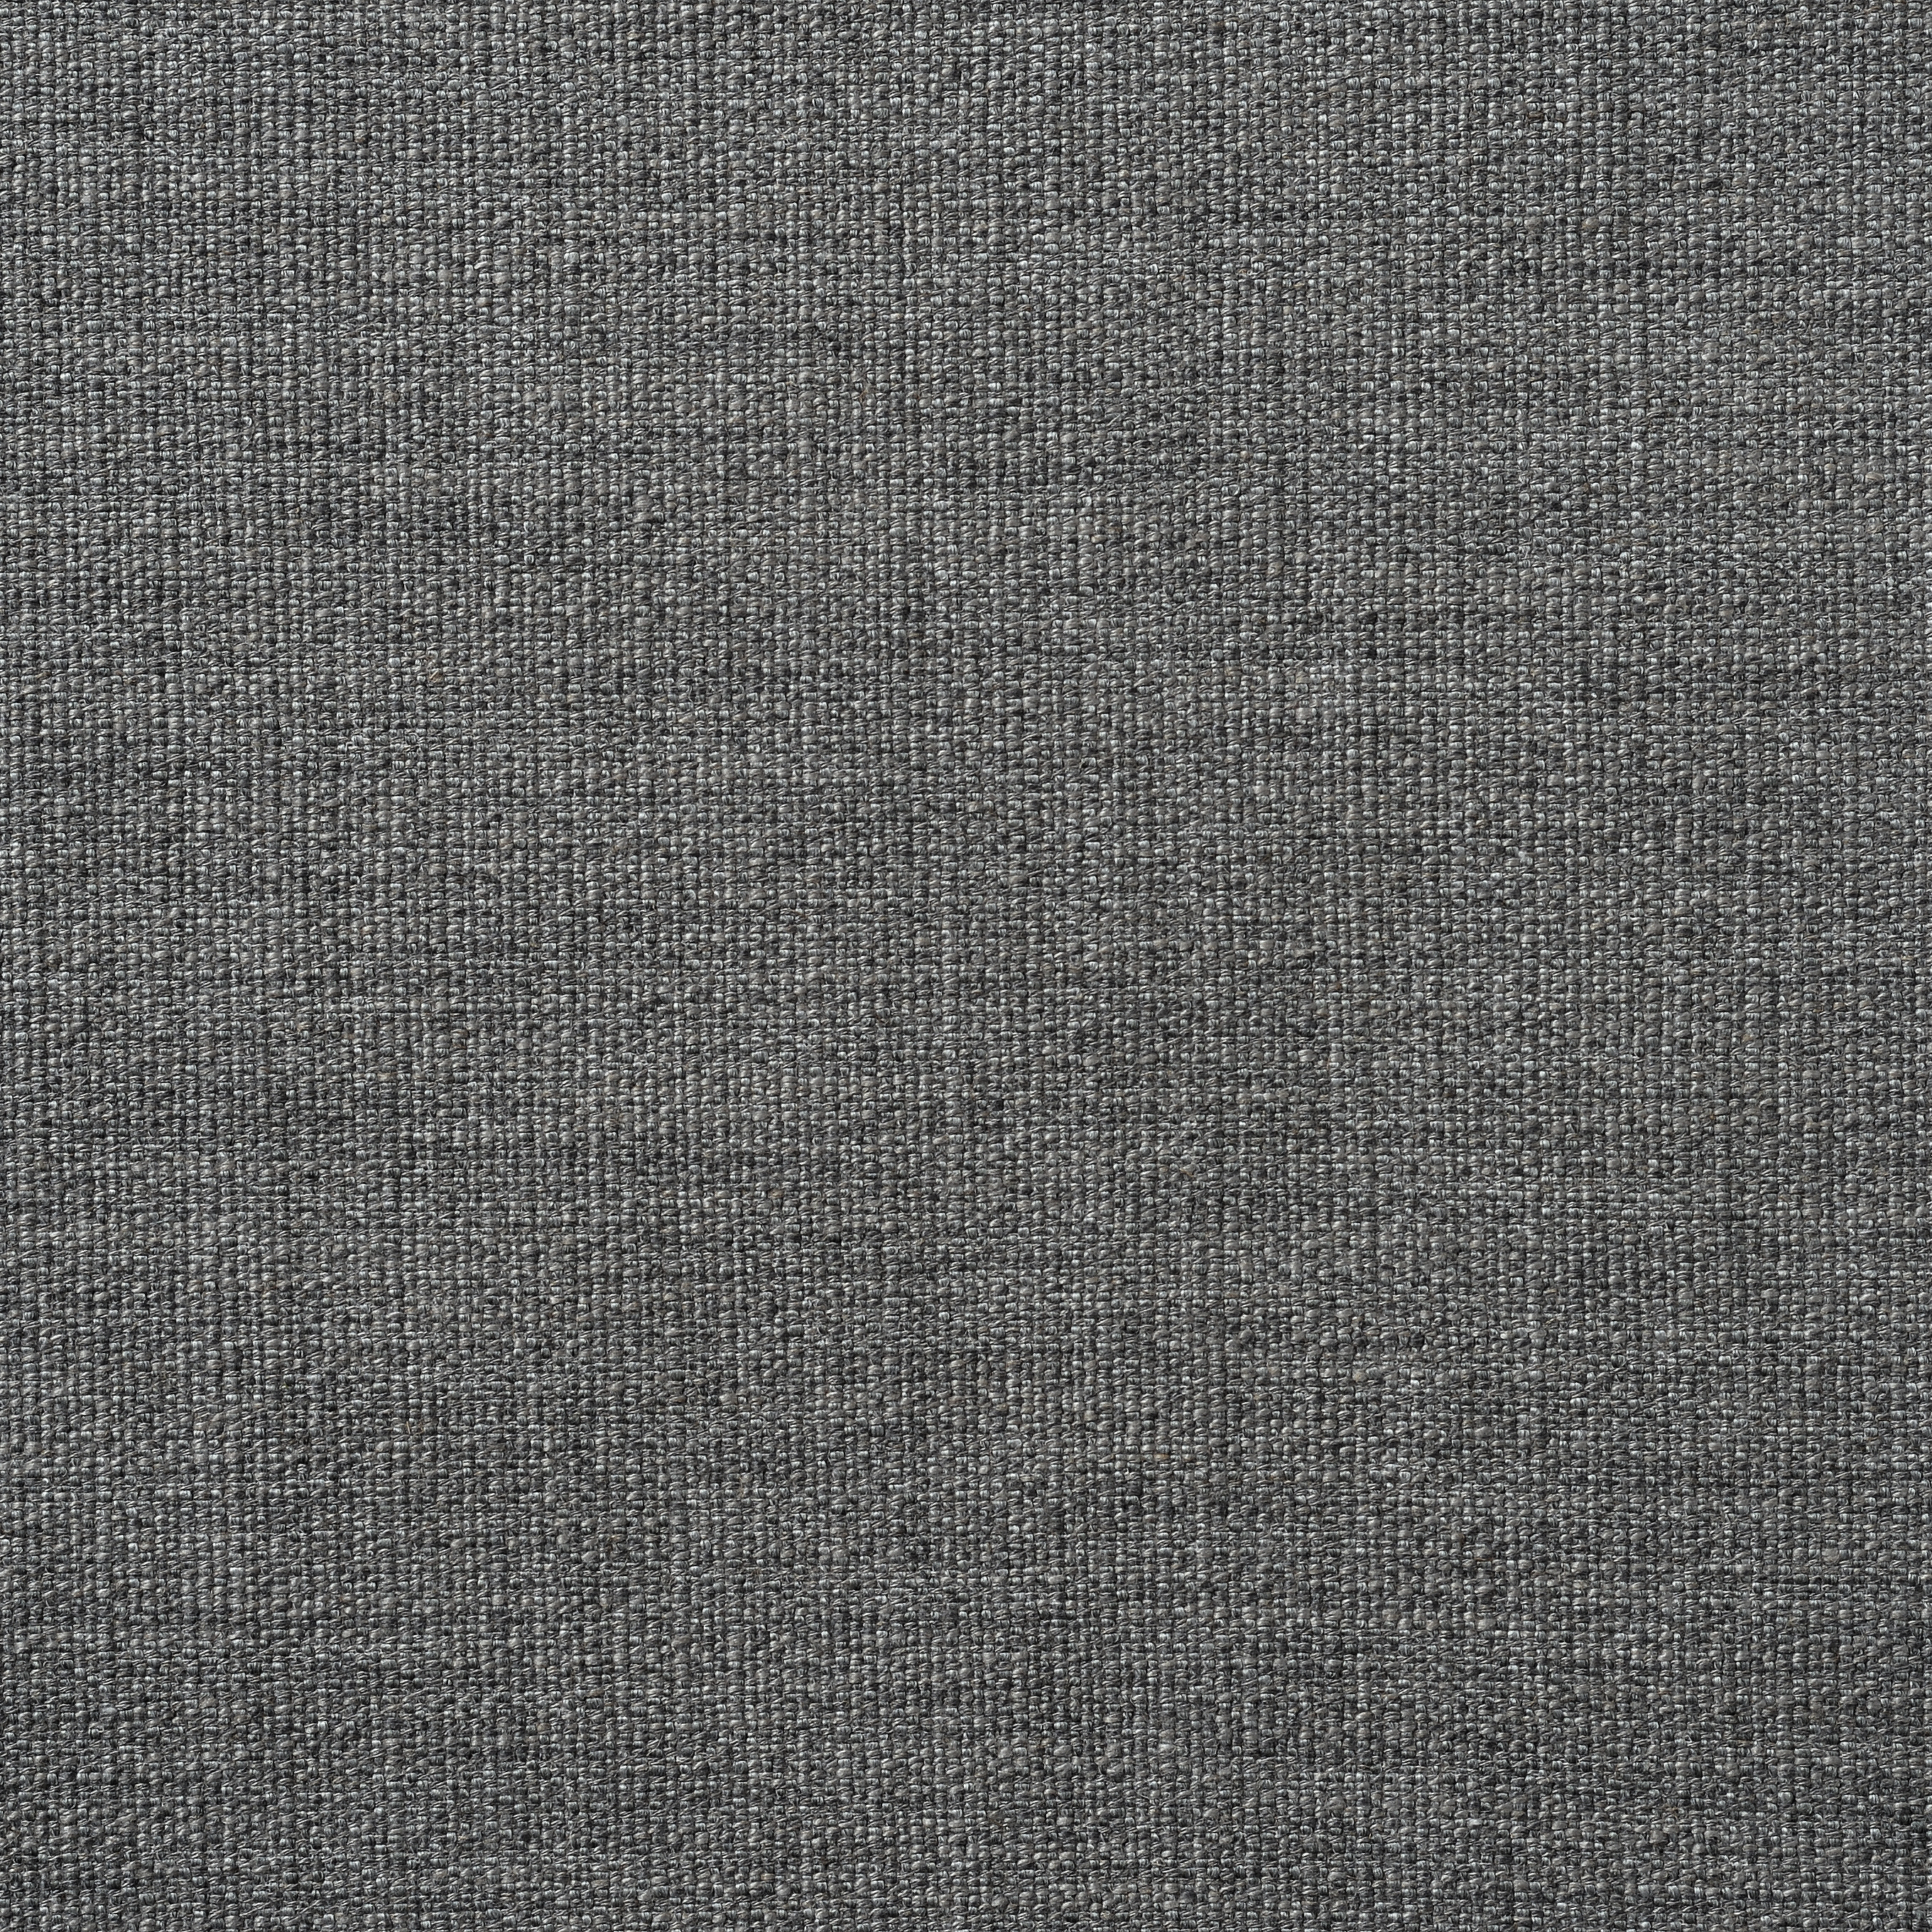 Harriet Rustic Weave - Grey Marl